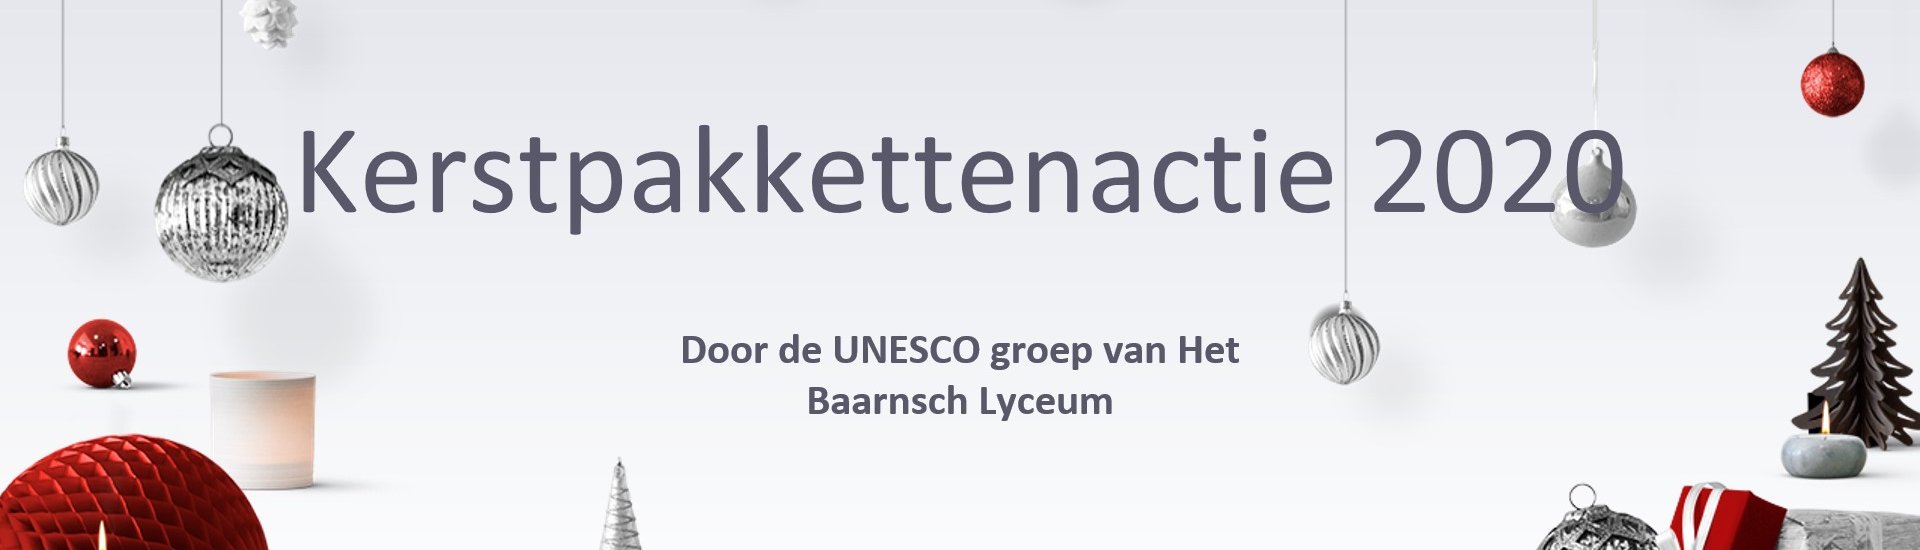 De Unesco-werkgroep van het Baarnsch Lyceum organiseert een kerstpakkettenactie